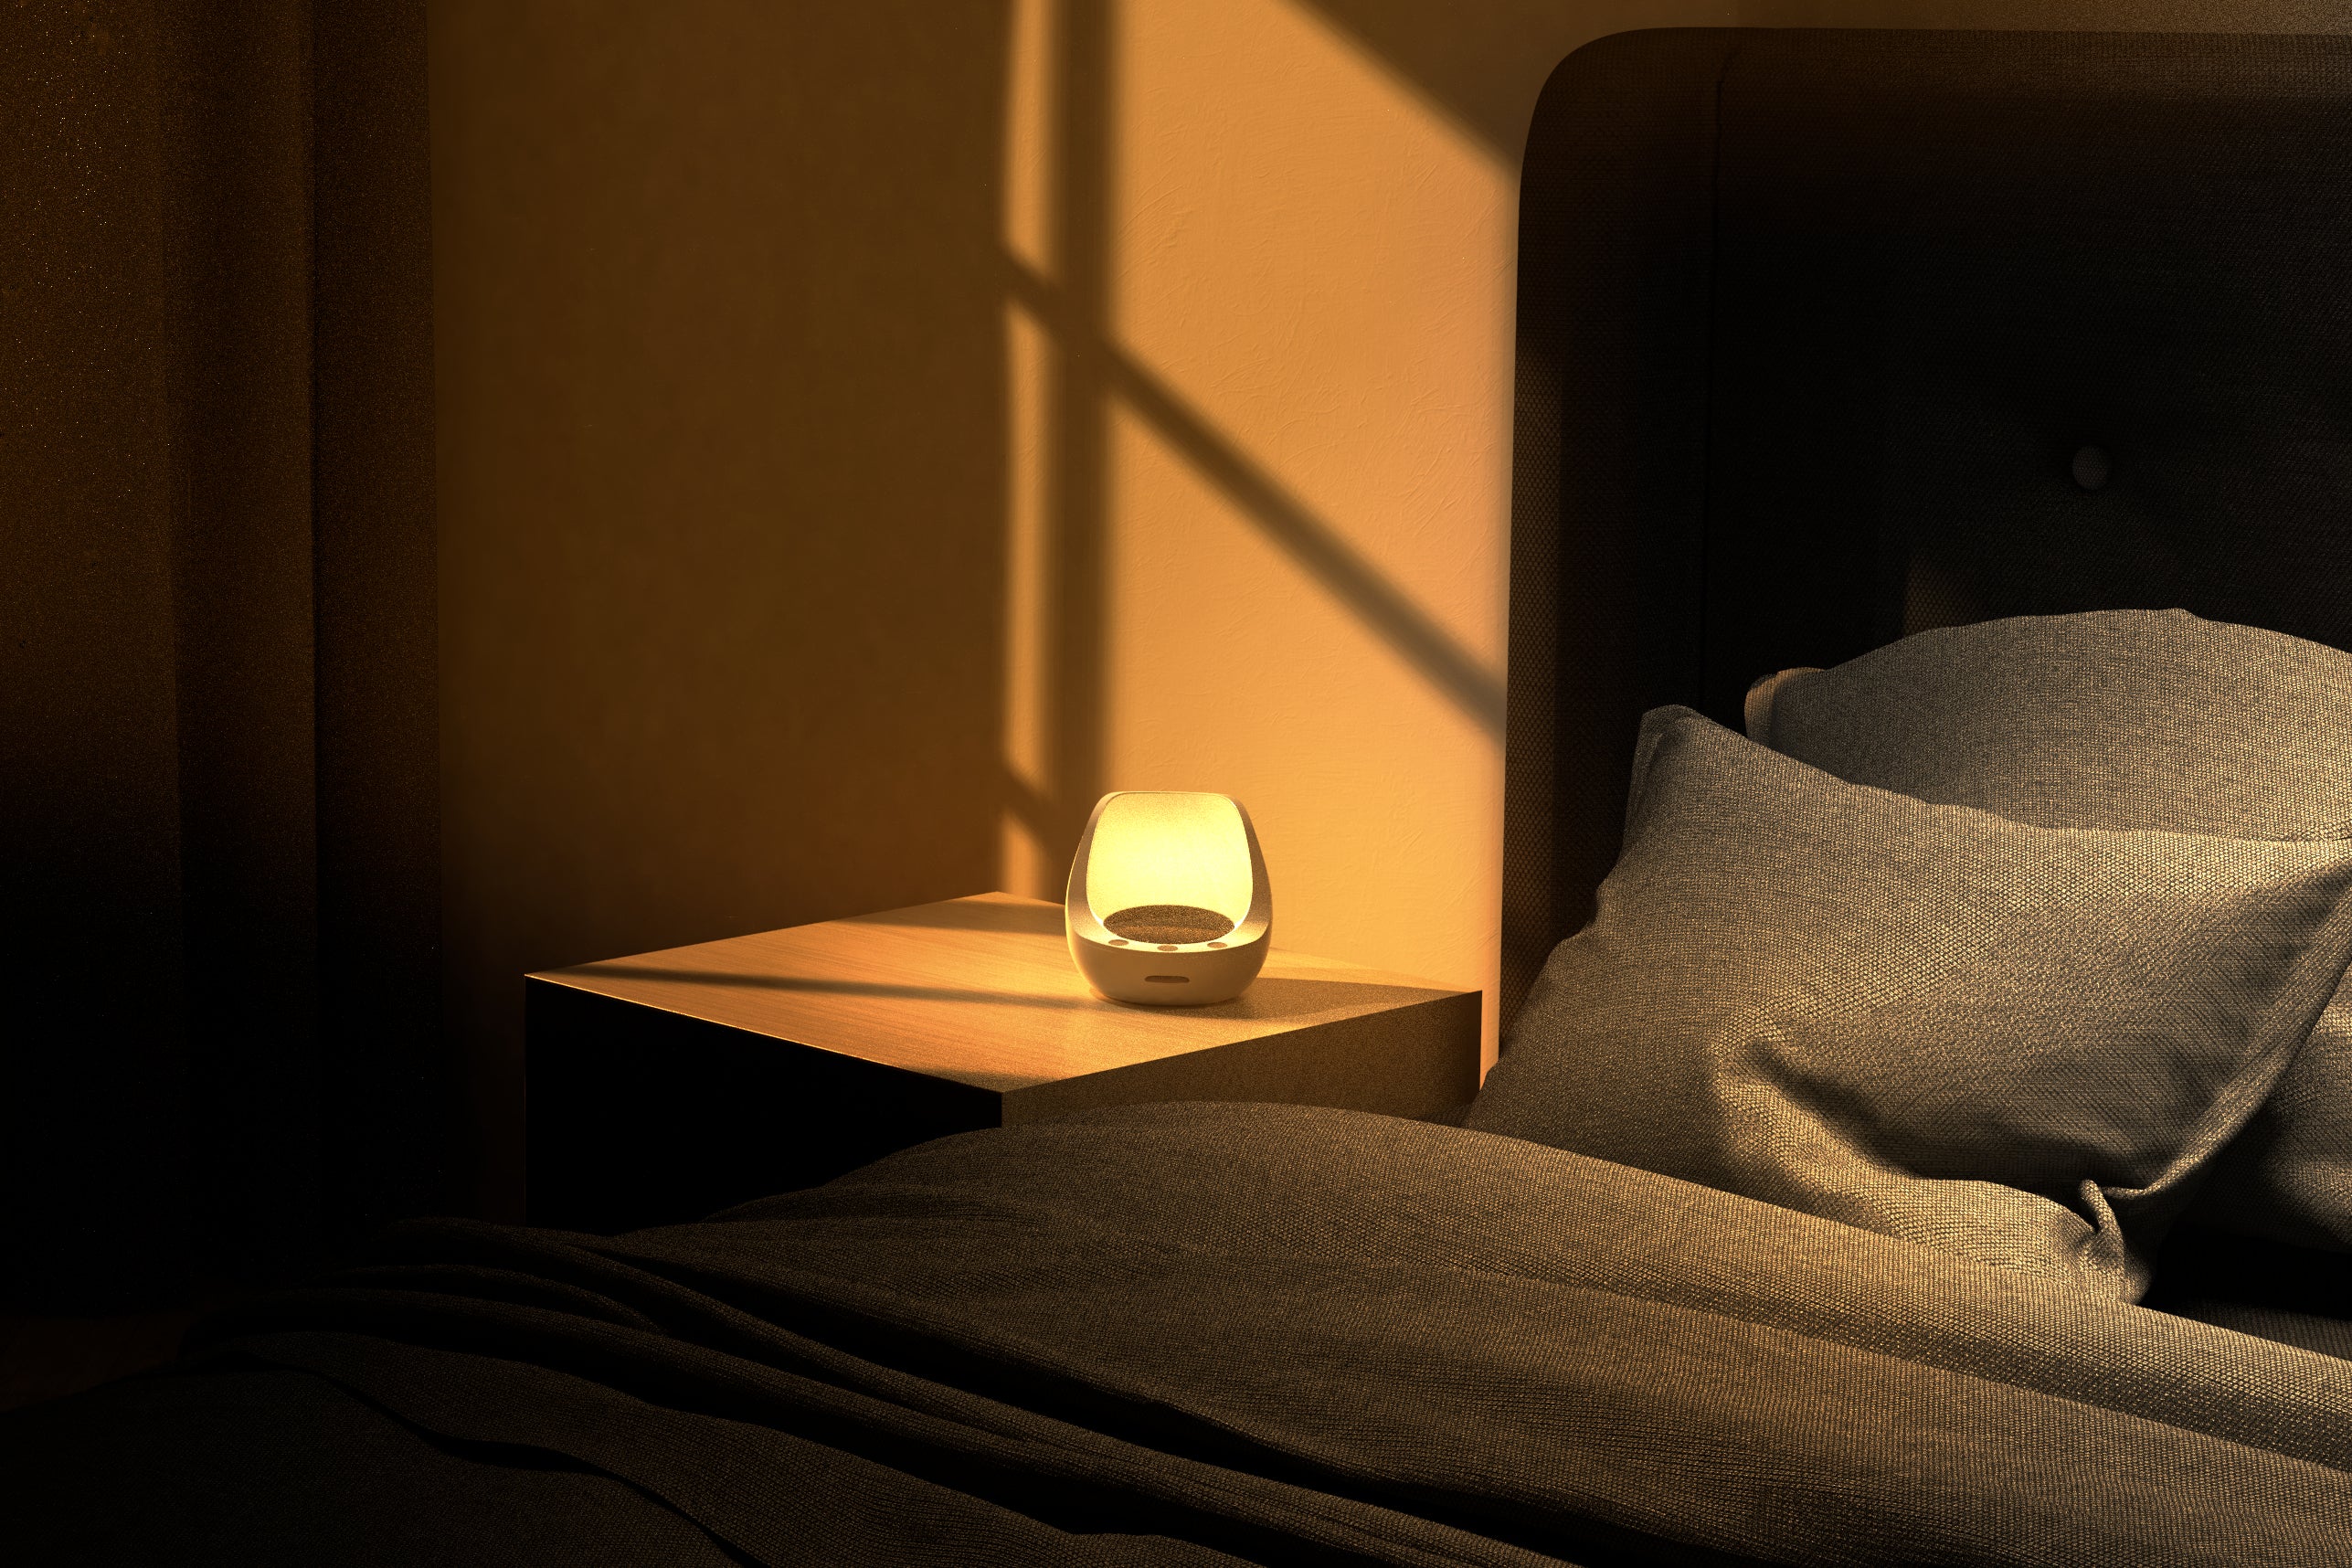 Oppvåkningslyset lyser på søvnklokken som står i et mørkt rom